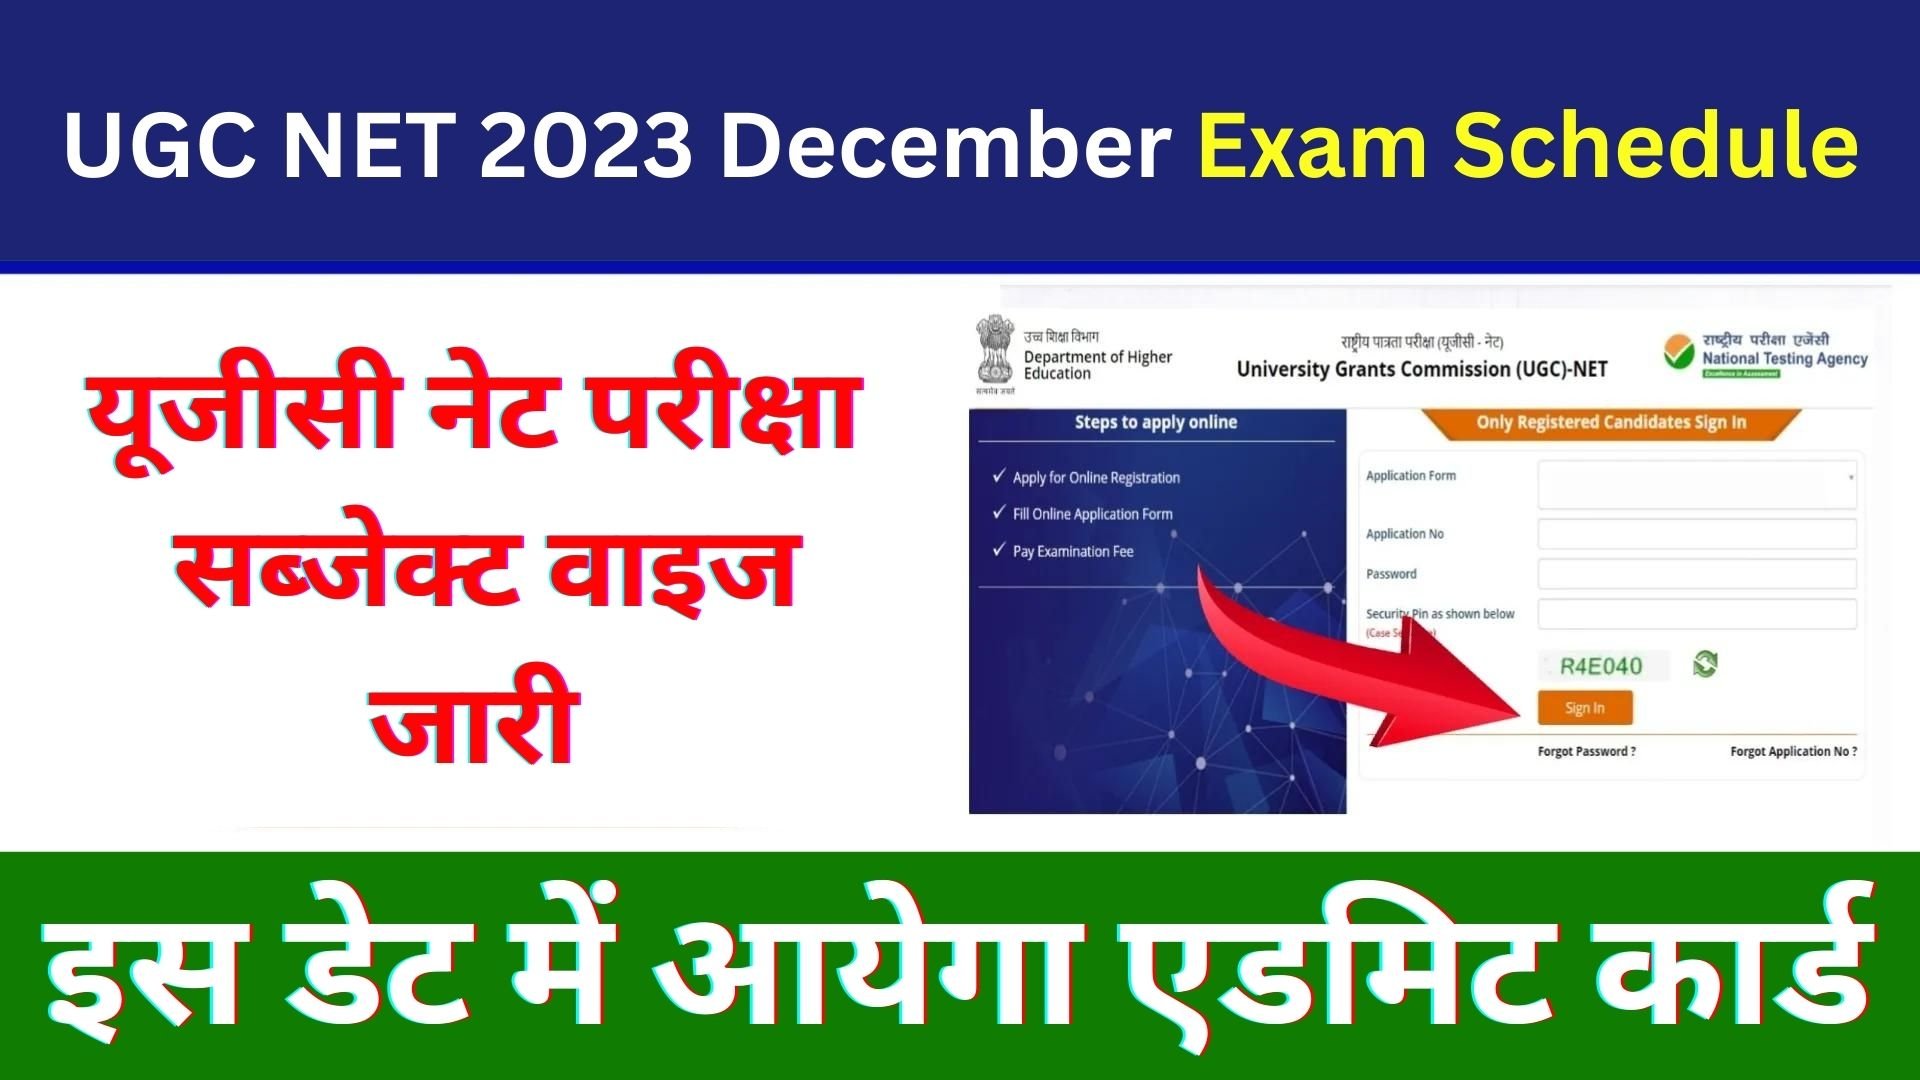 UGC NET 2023 December Exam Schedule 2023 : यूजीसी नेट परीक्षा सब्जेक्ट वाइज जारी इस डेट में आयेगा एडमिट कार्ड